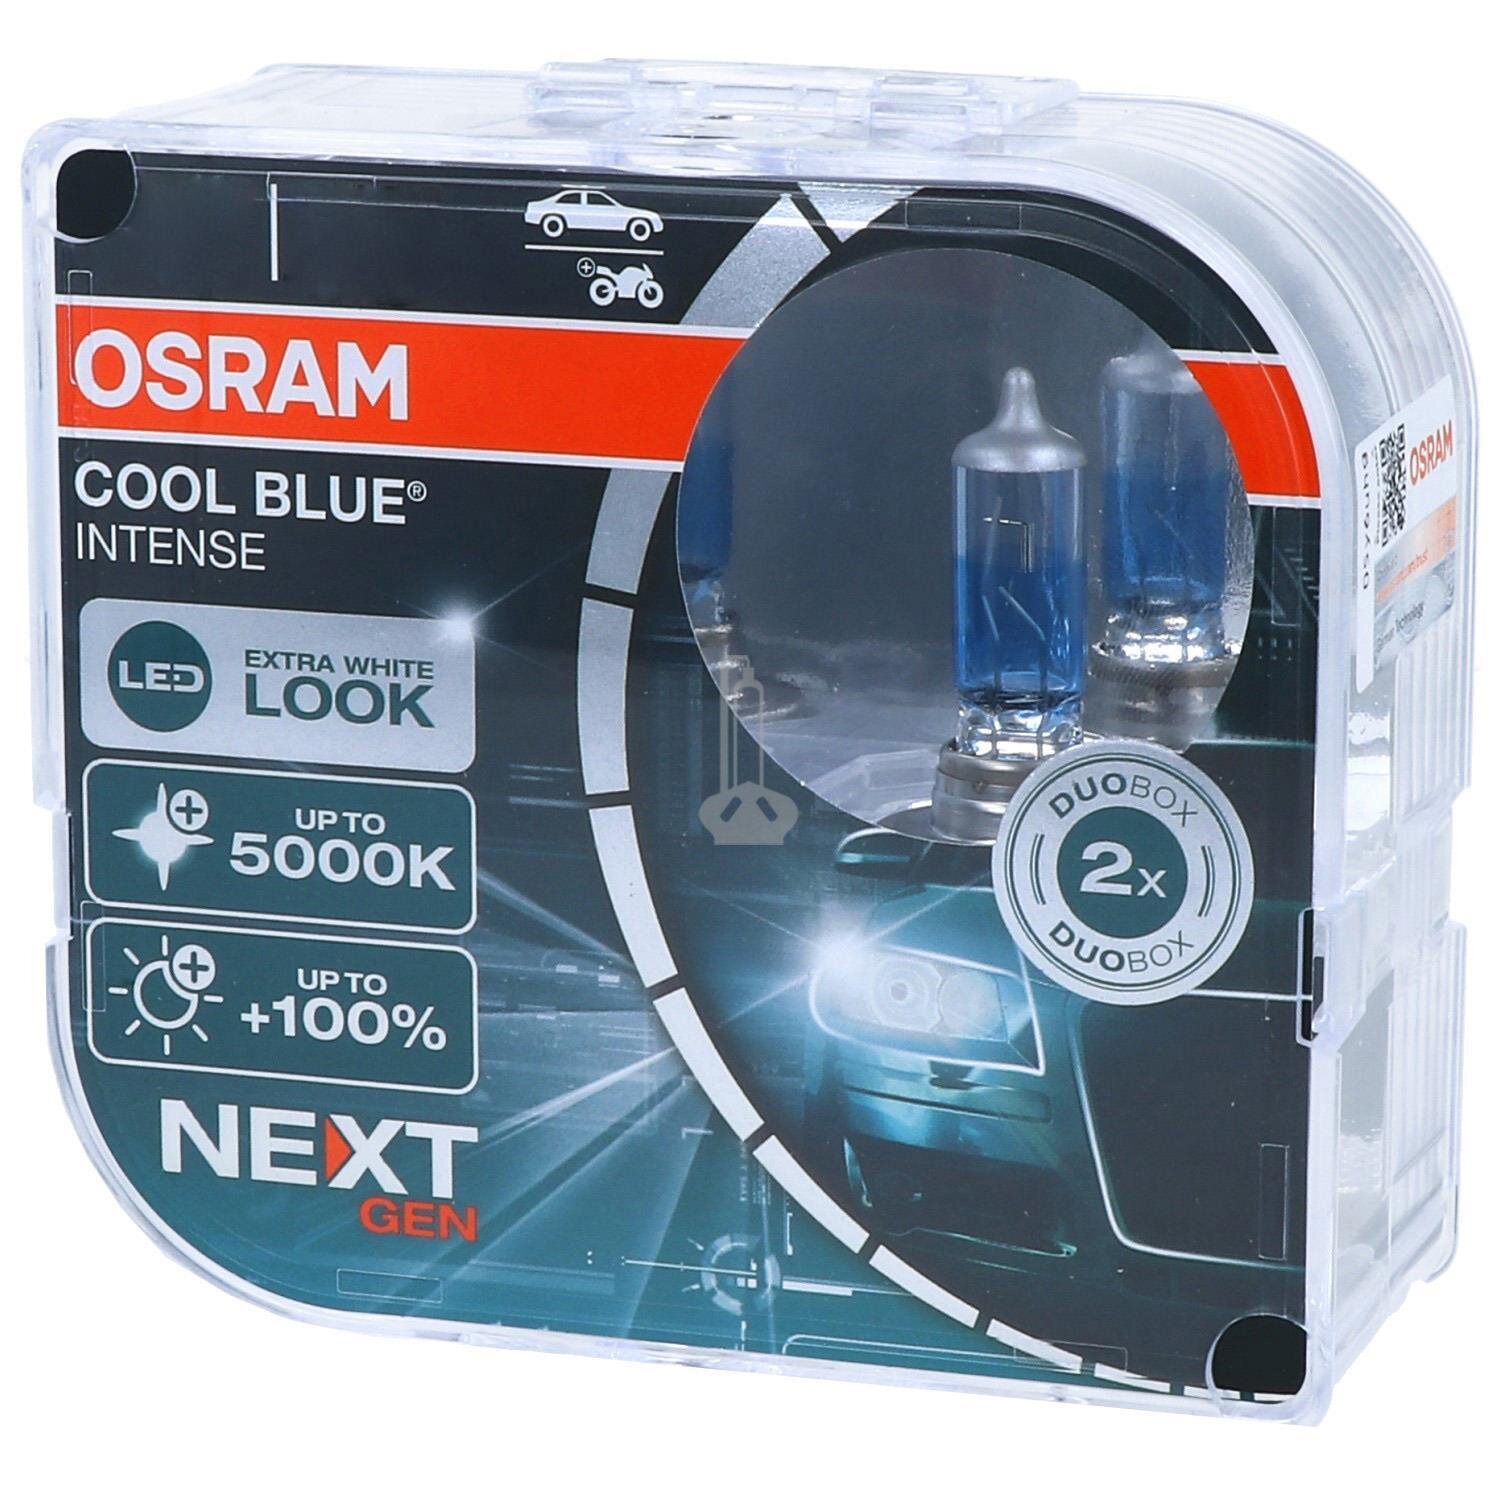 2x Original Osram COOL BLUE INTENSE 5000K Xenon Brenner Birne für